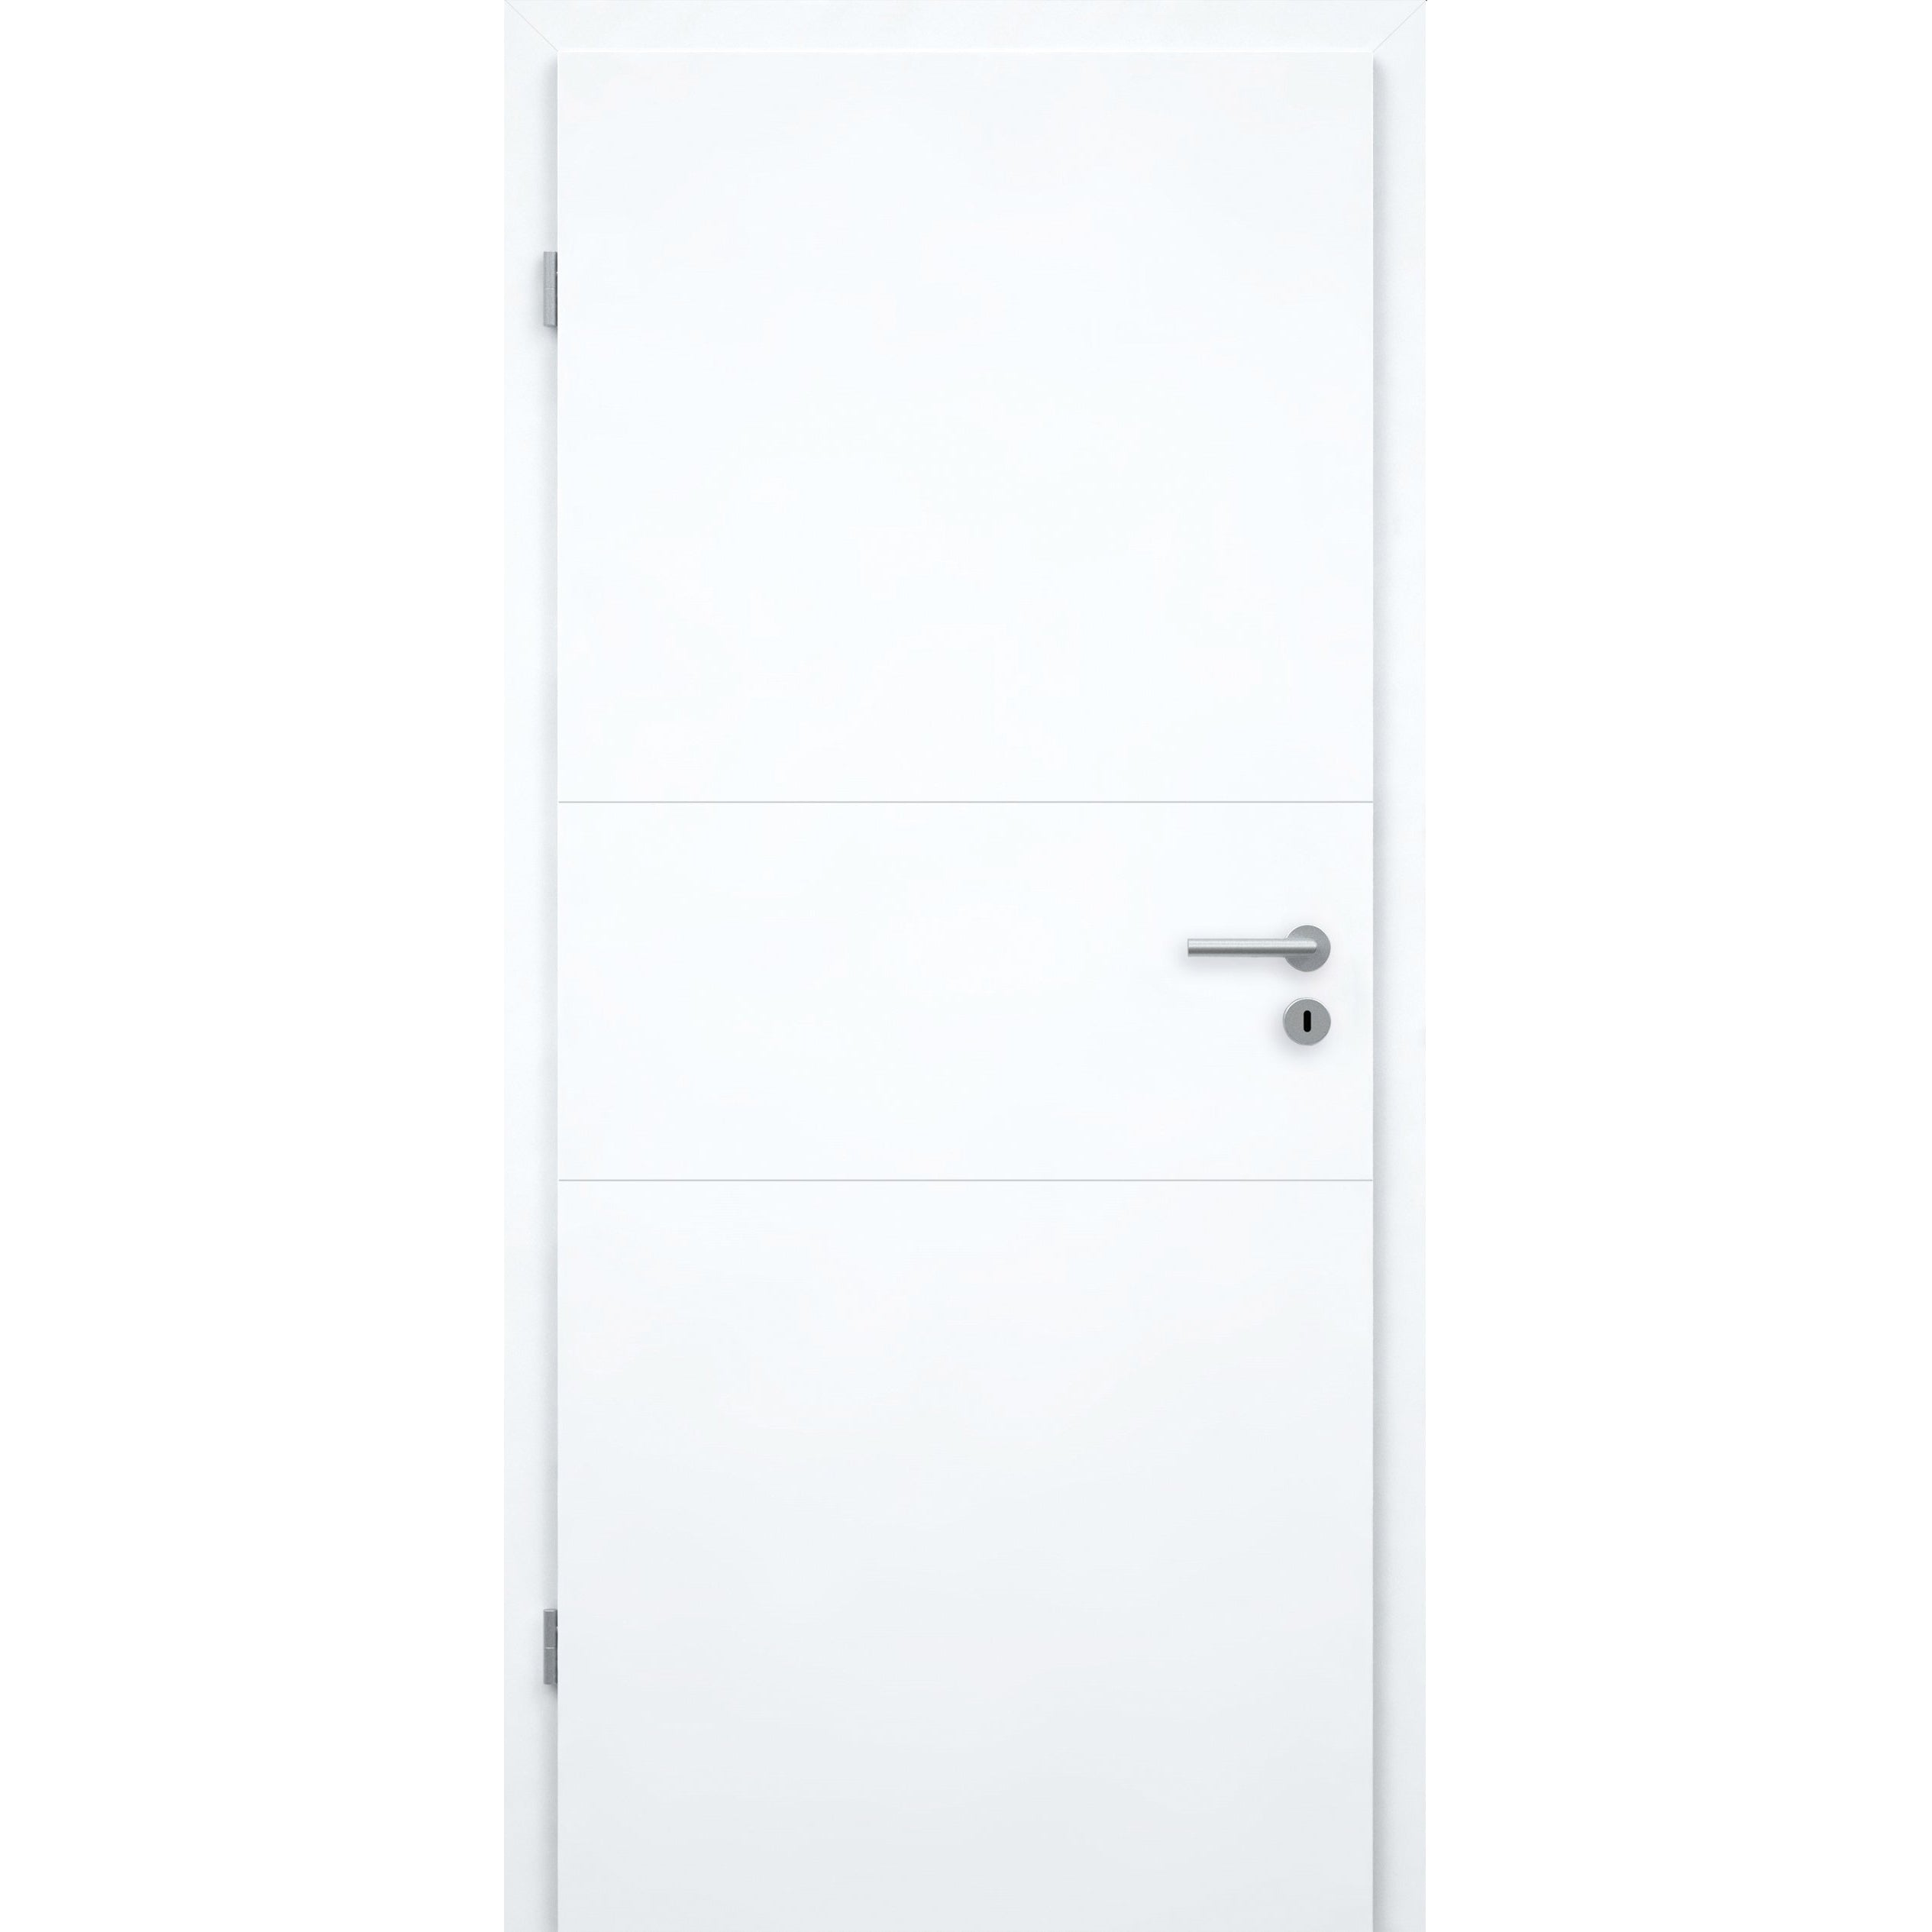 Zimmertür brillant-weiß 2 Rillen quer Designkante - Modell Designtür Q23